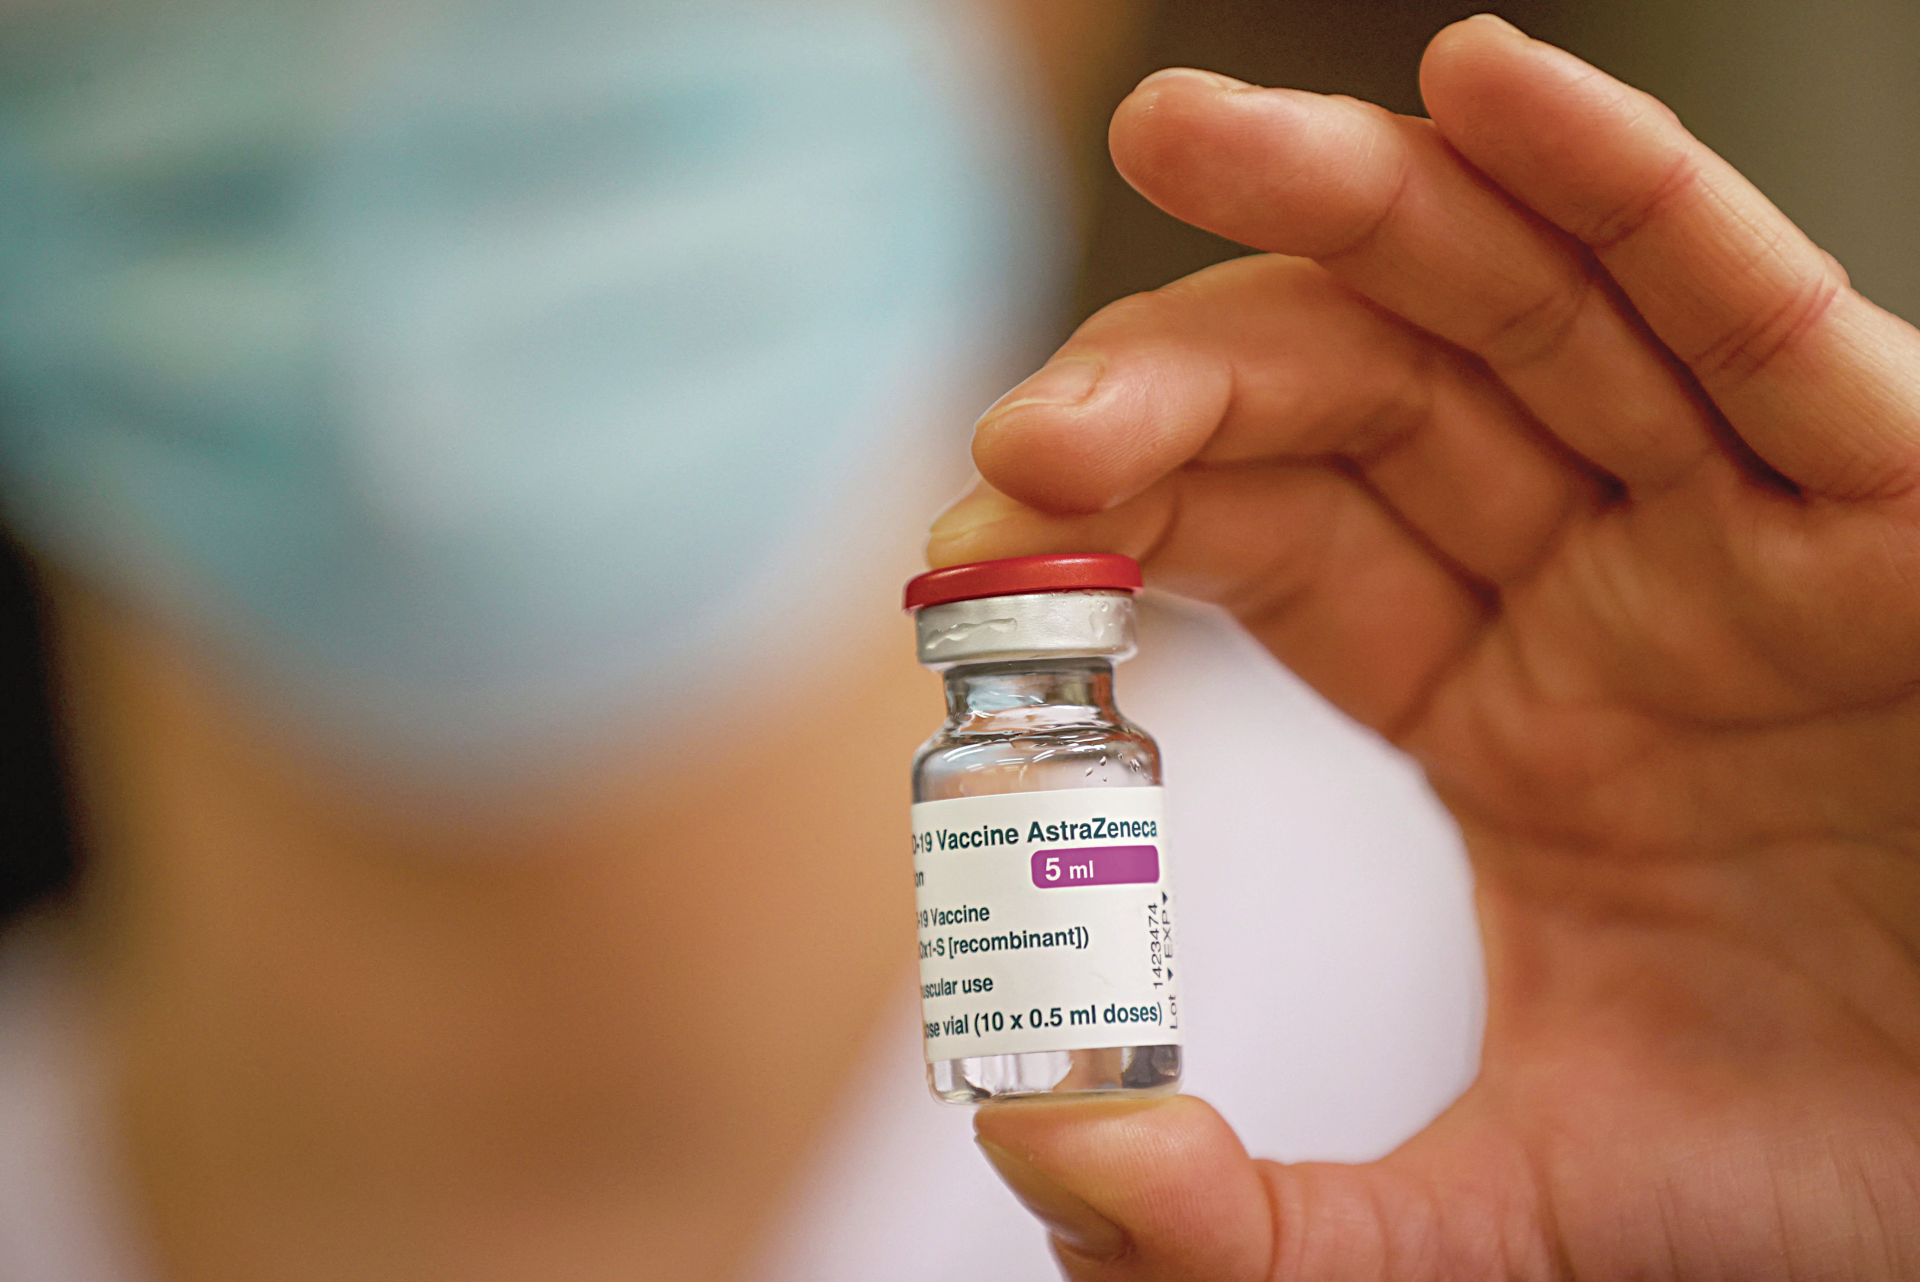 EMA divulga conclusões sobre Astrazeneca: “Esta vacina é segura e eficaz”